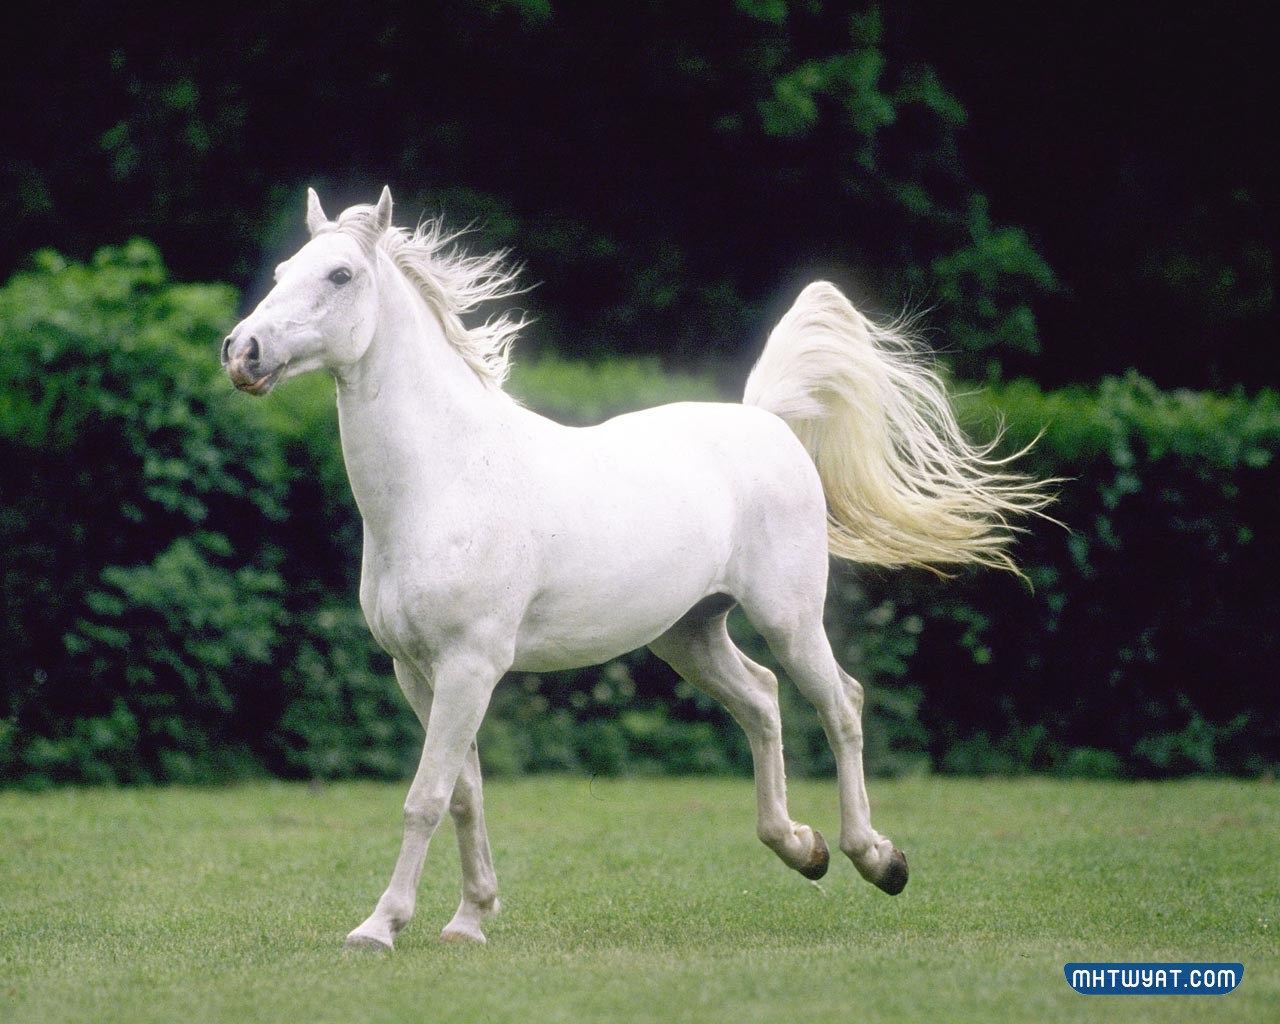 خيول عربية أصيلة بيضاء فخمة